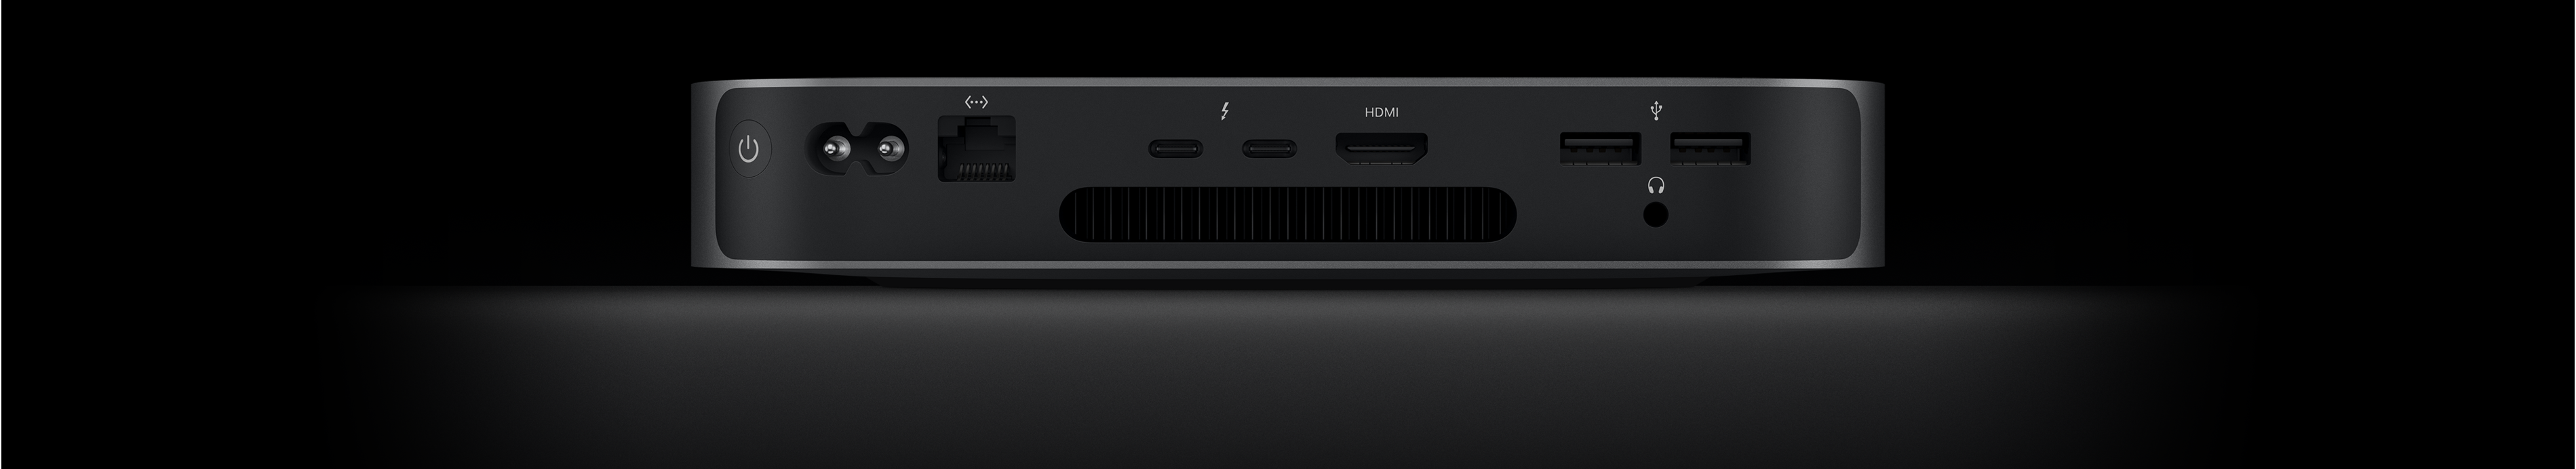 Πίσω όψη του Mac mini στην οποία φαίνονται οι δύο θύρες Thunderbolt 4, η θύρα HDMI, οι δύο θύρες USB-A, η υποδοχή ακουστικών, η θύρα Gigabit Ethernet, η θύρα τροφοδοσίας και το κουμπί τροφοδοσίας.